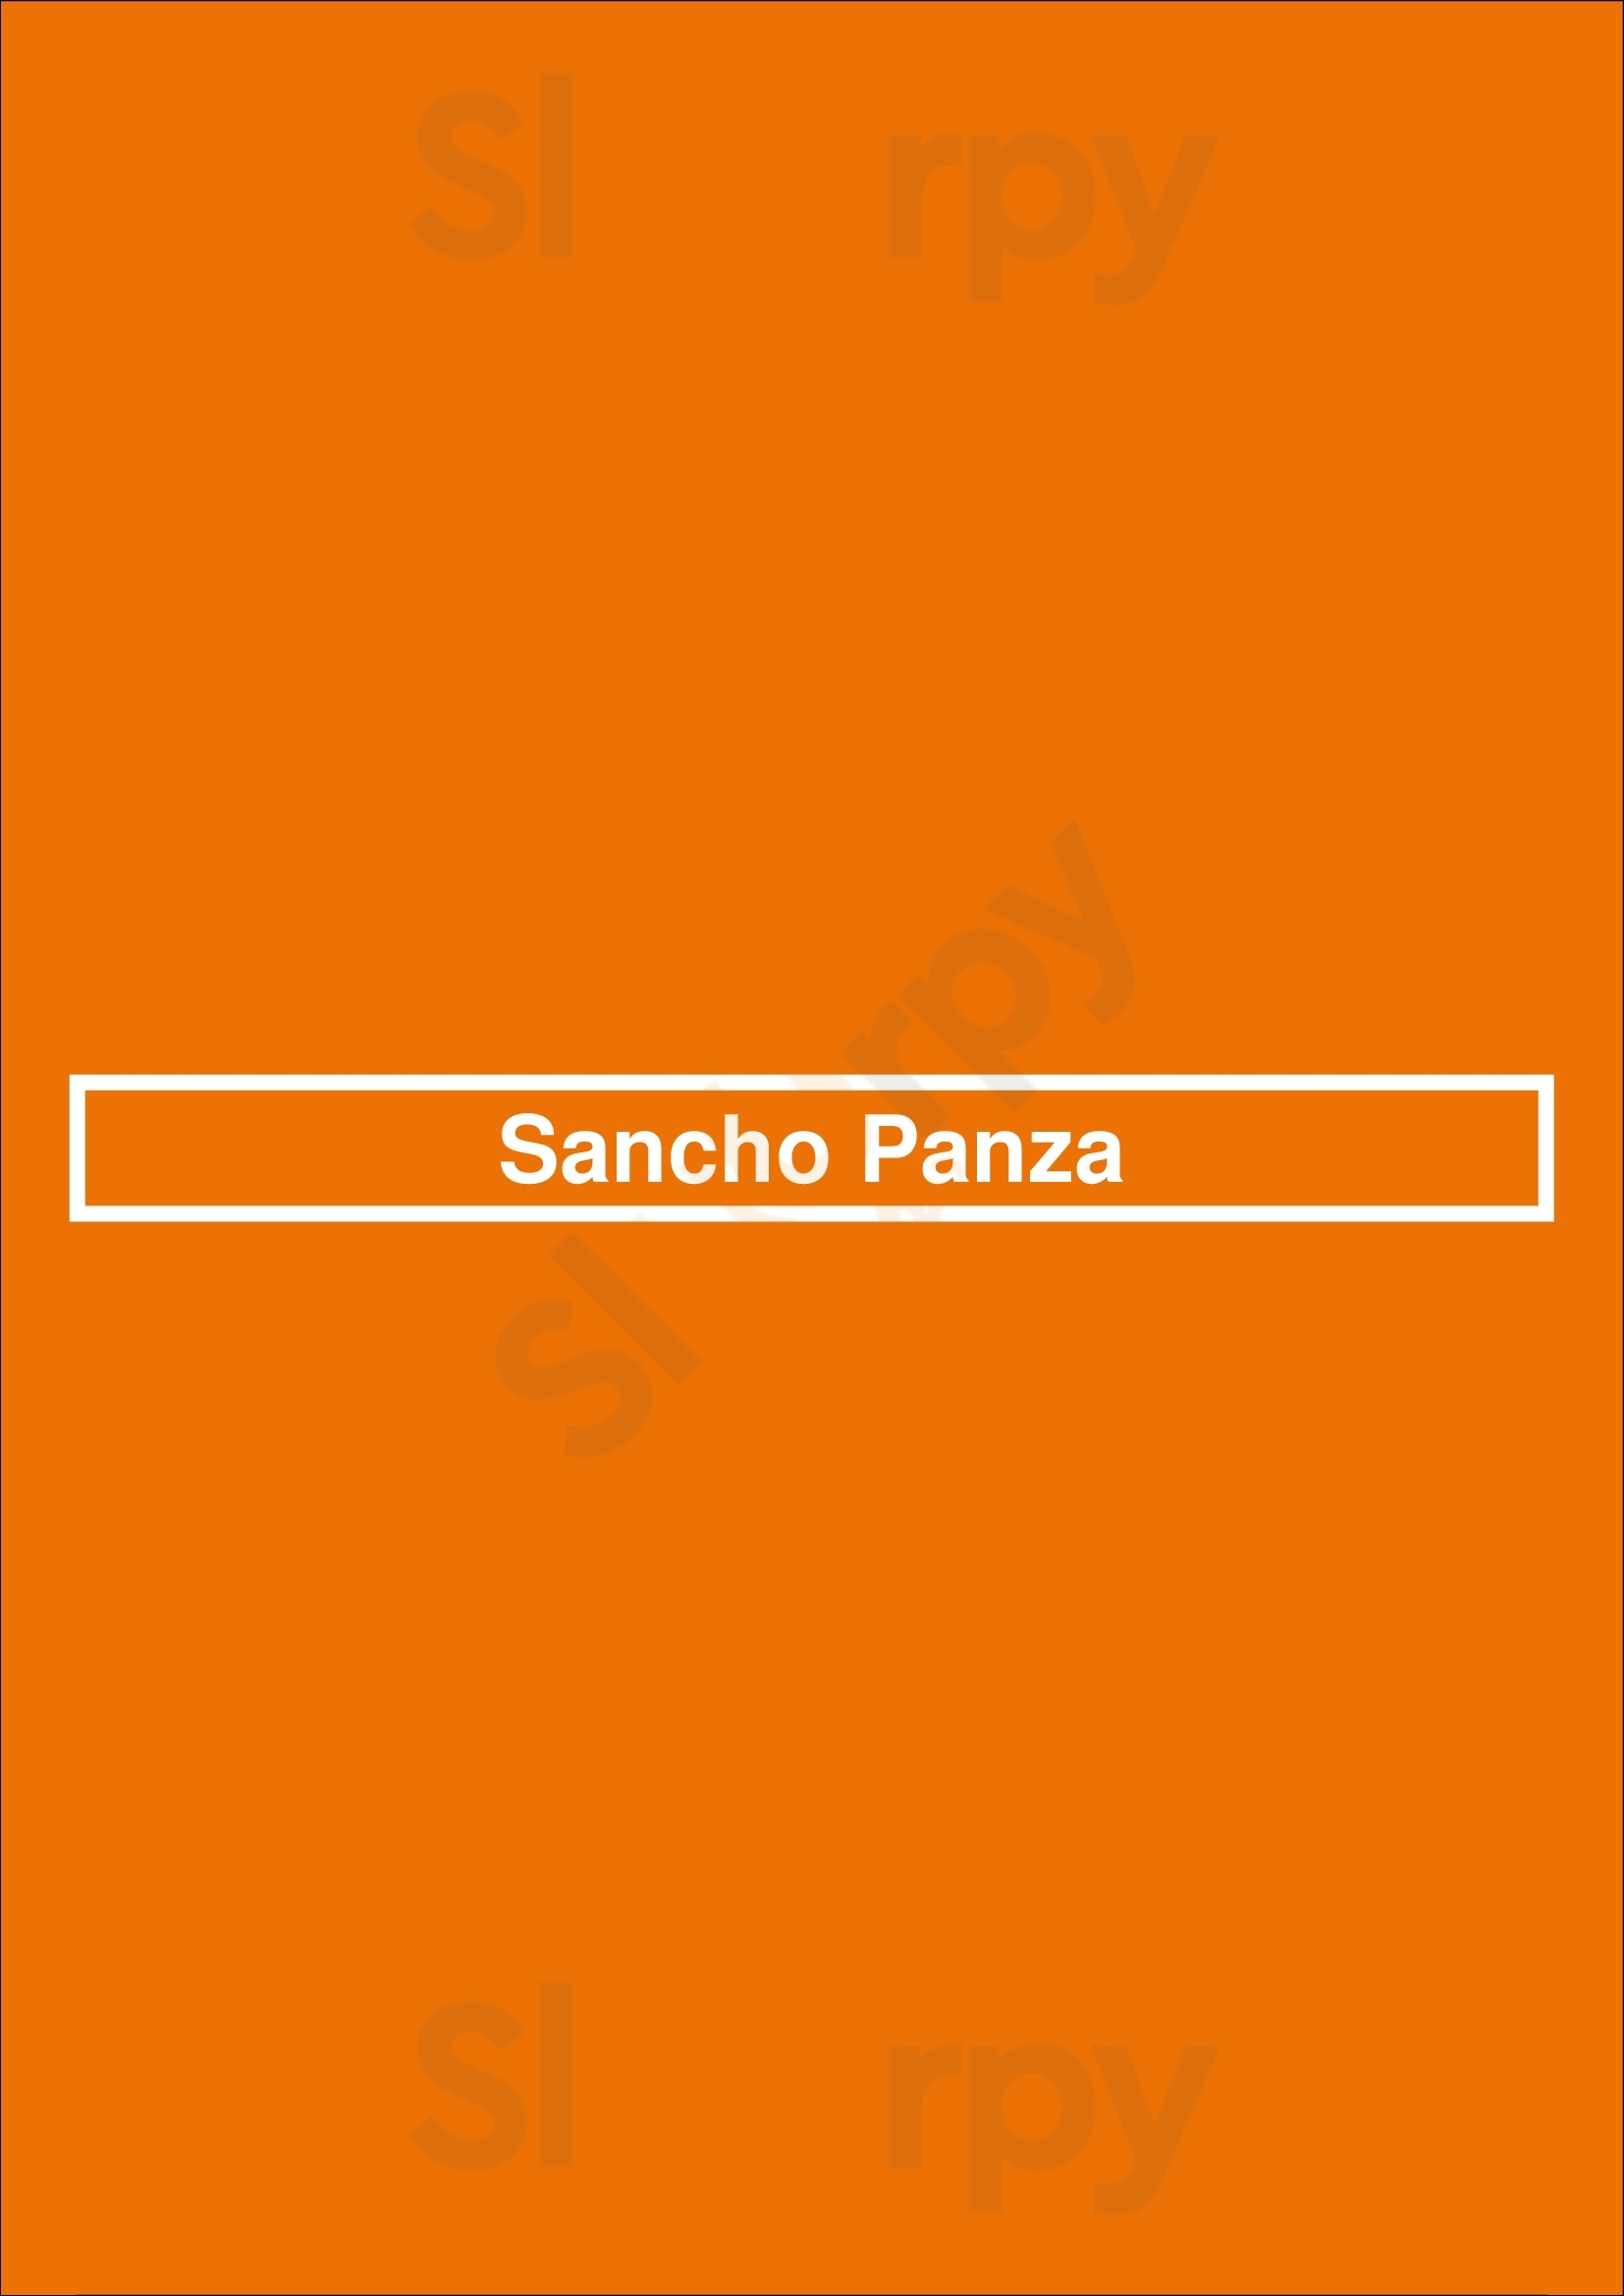 Sancho Panza Lisboa Menu - 1